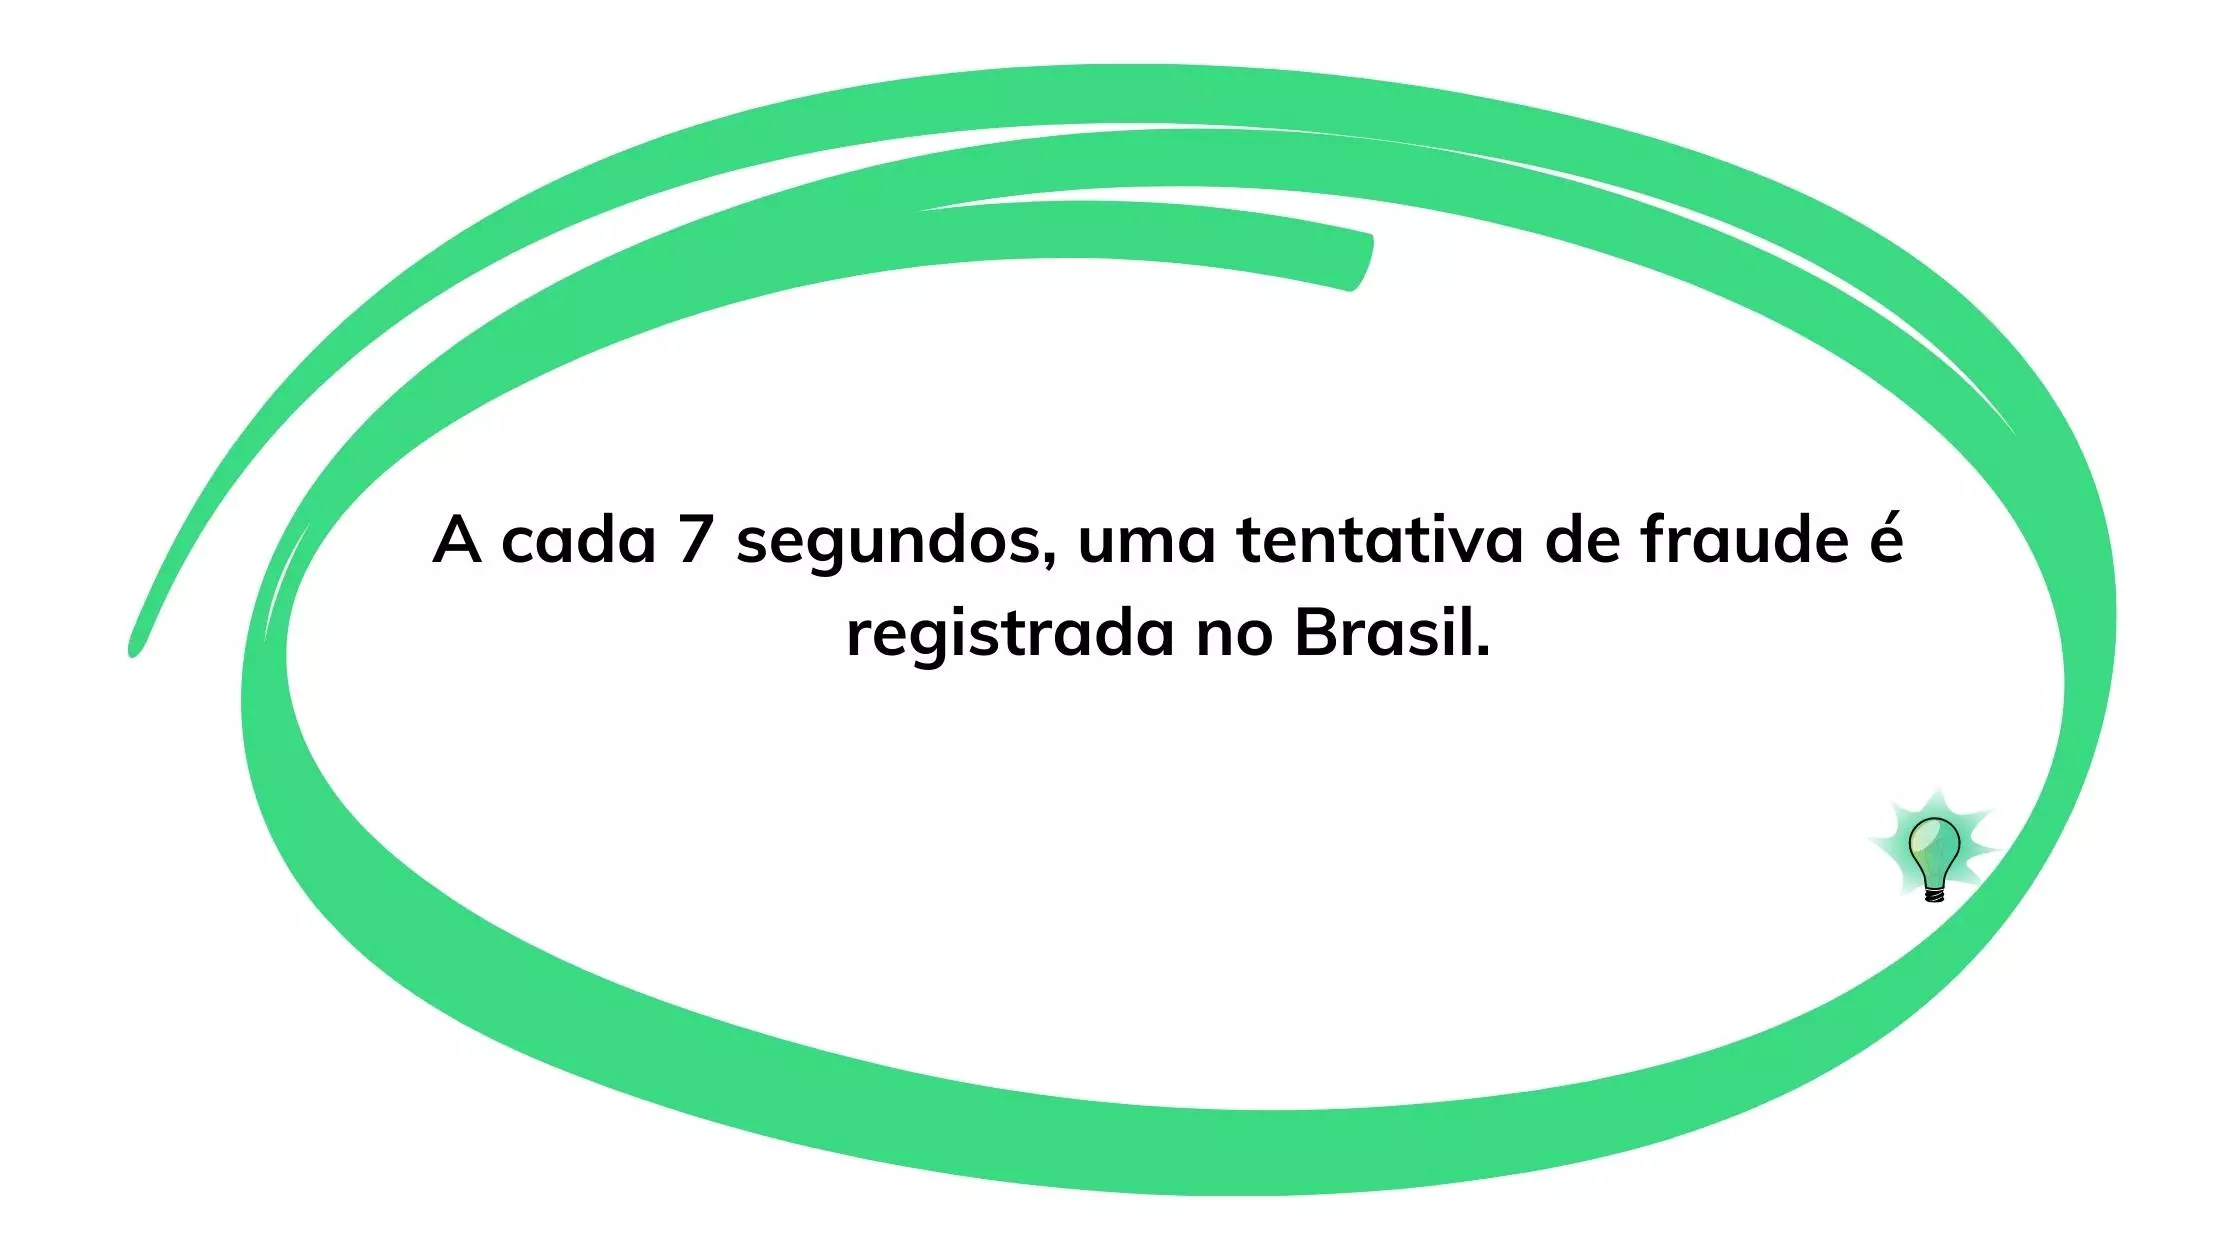 a cada 7 segundos uma tentativa de fraude é registrada no Brasil